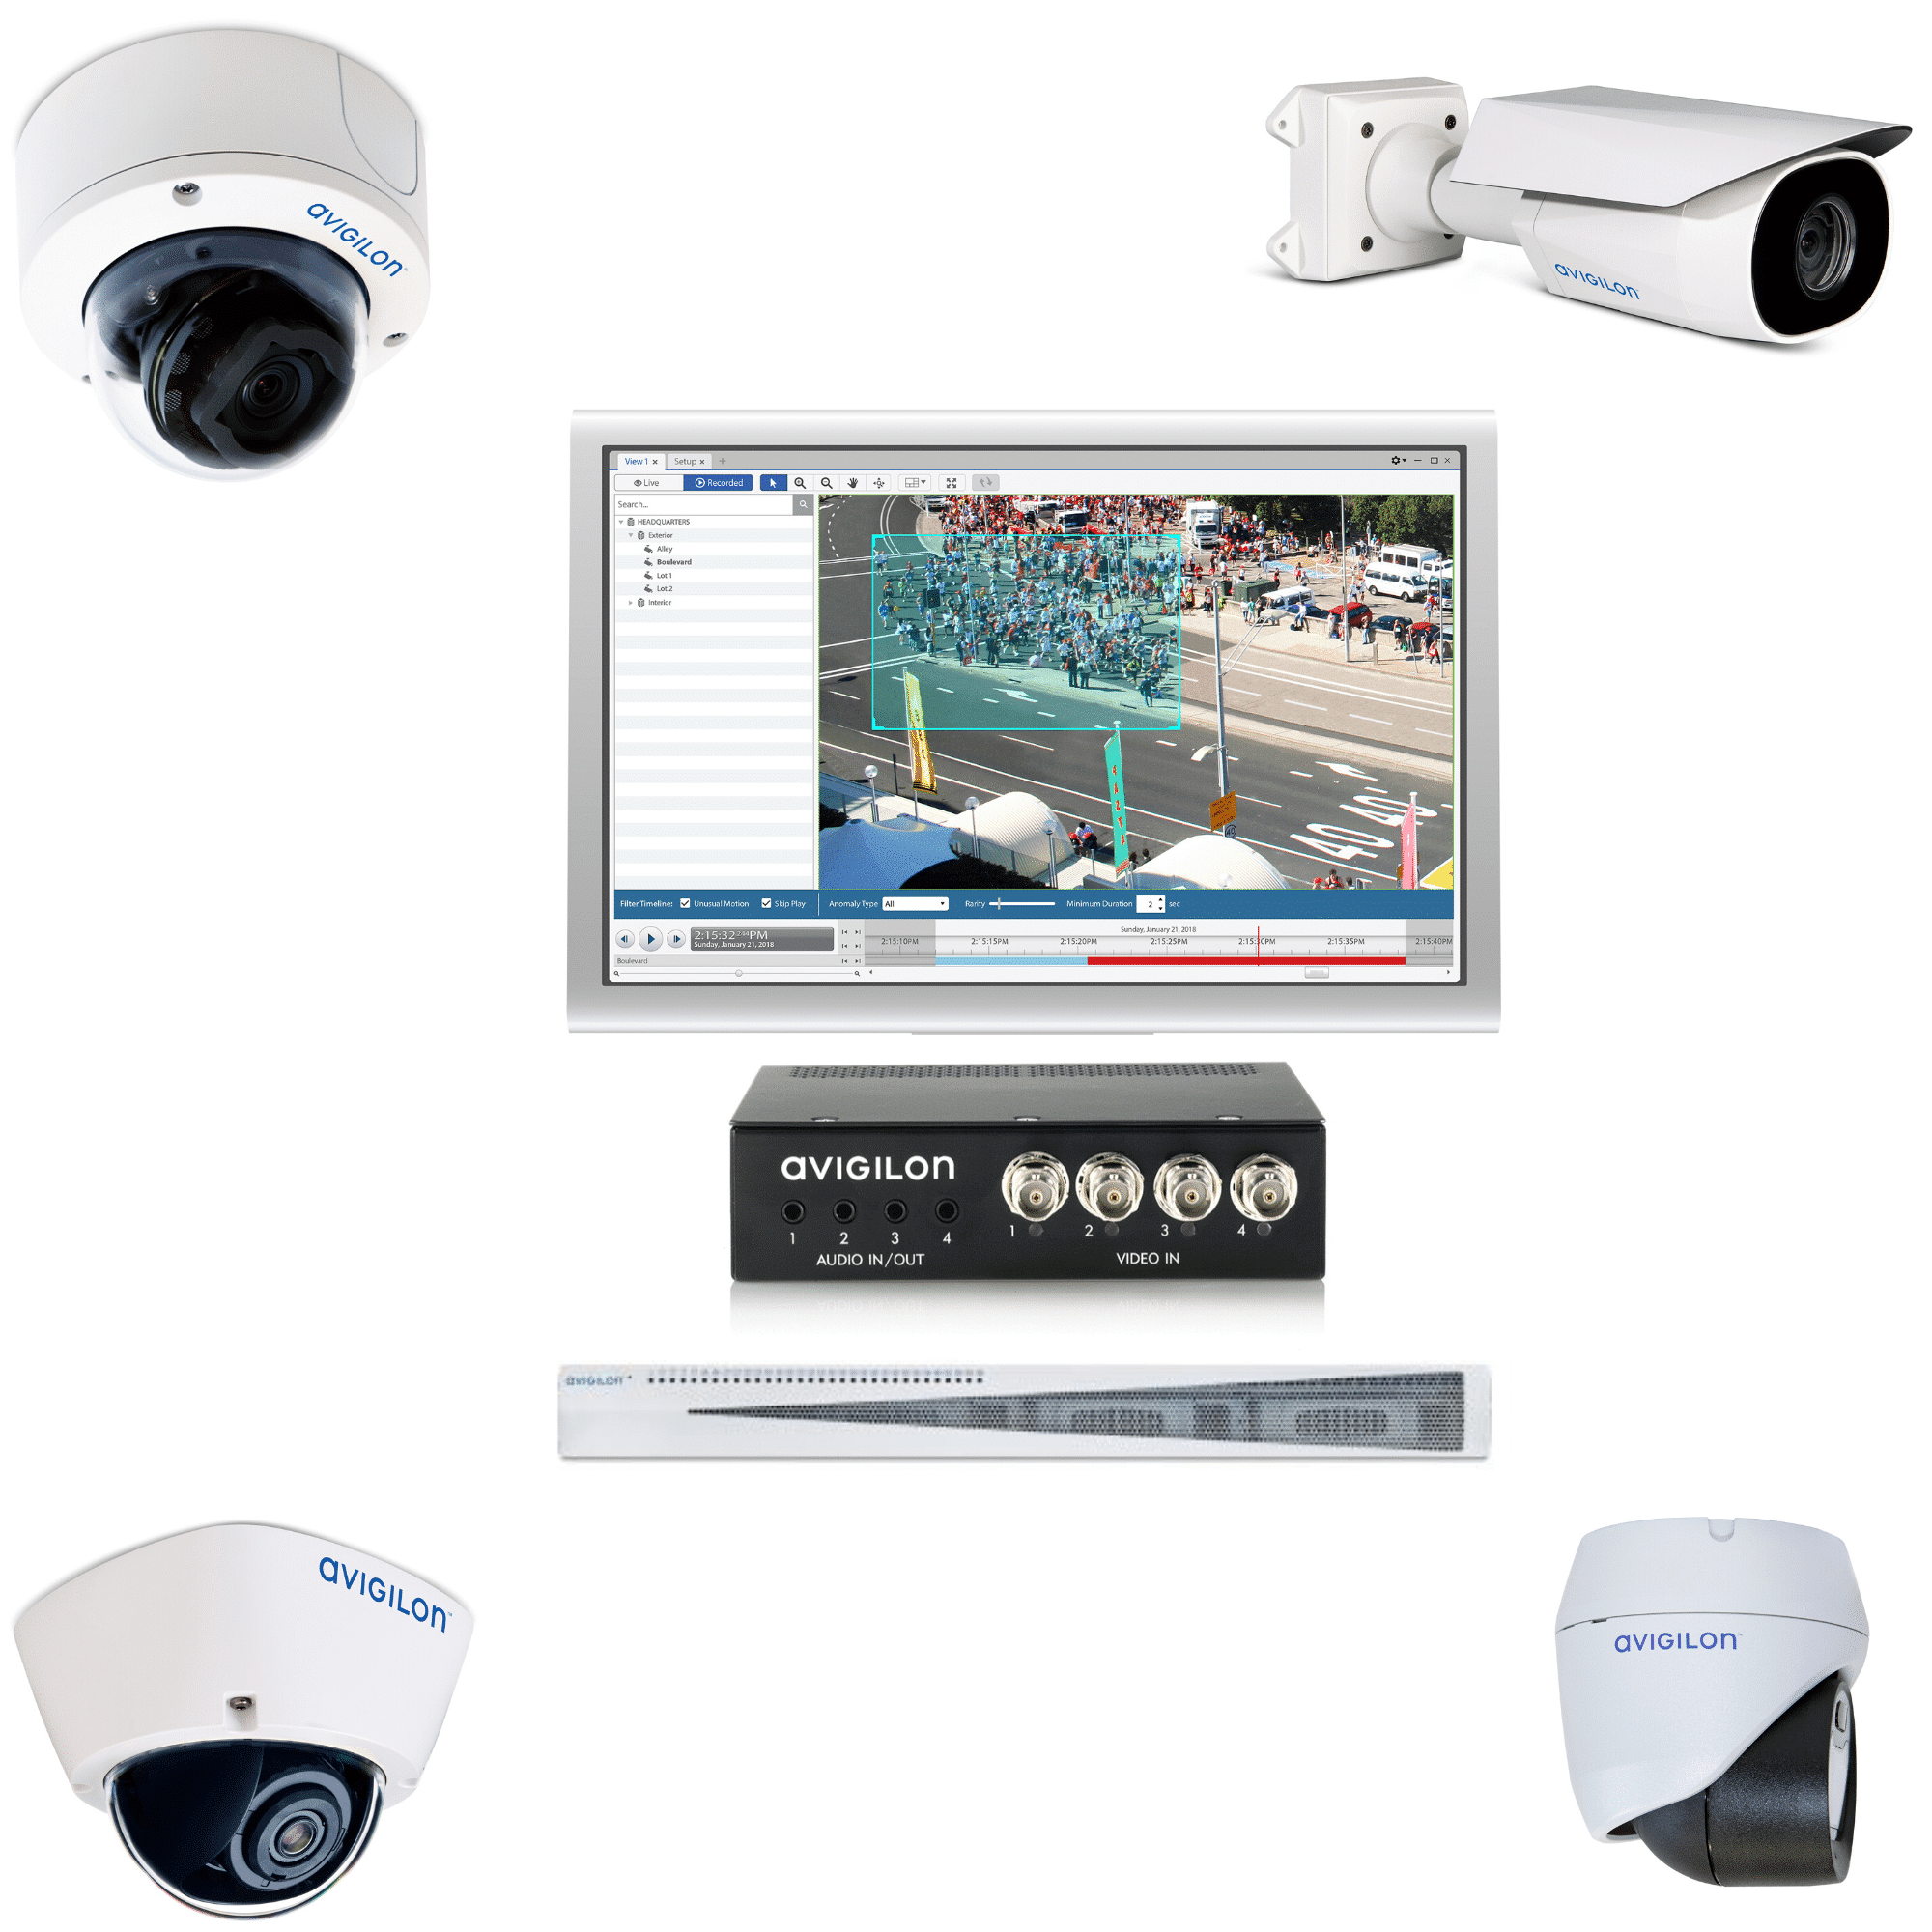 Avigilon CCTV Packages - Ecl-ips